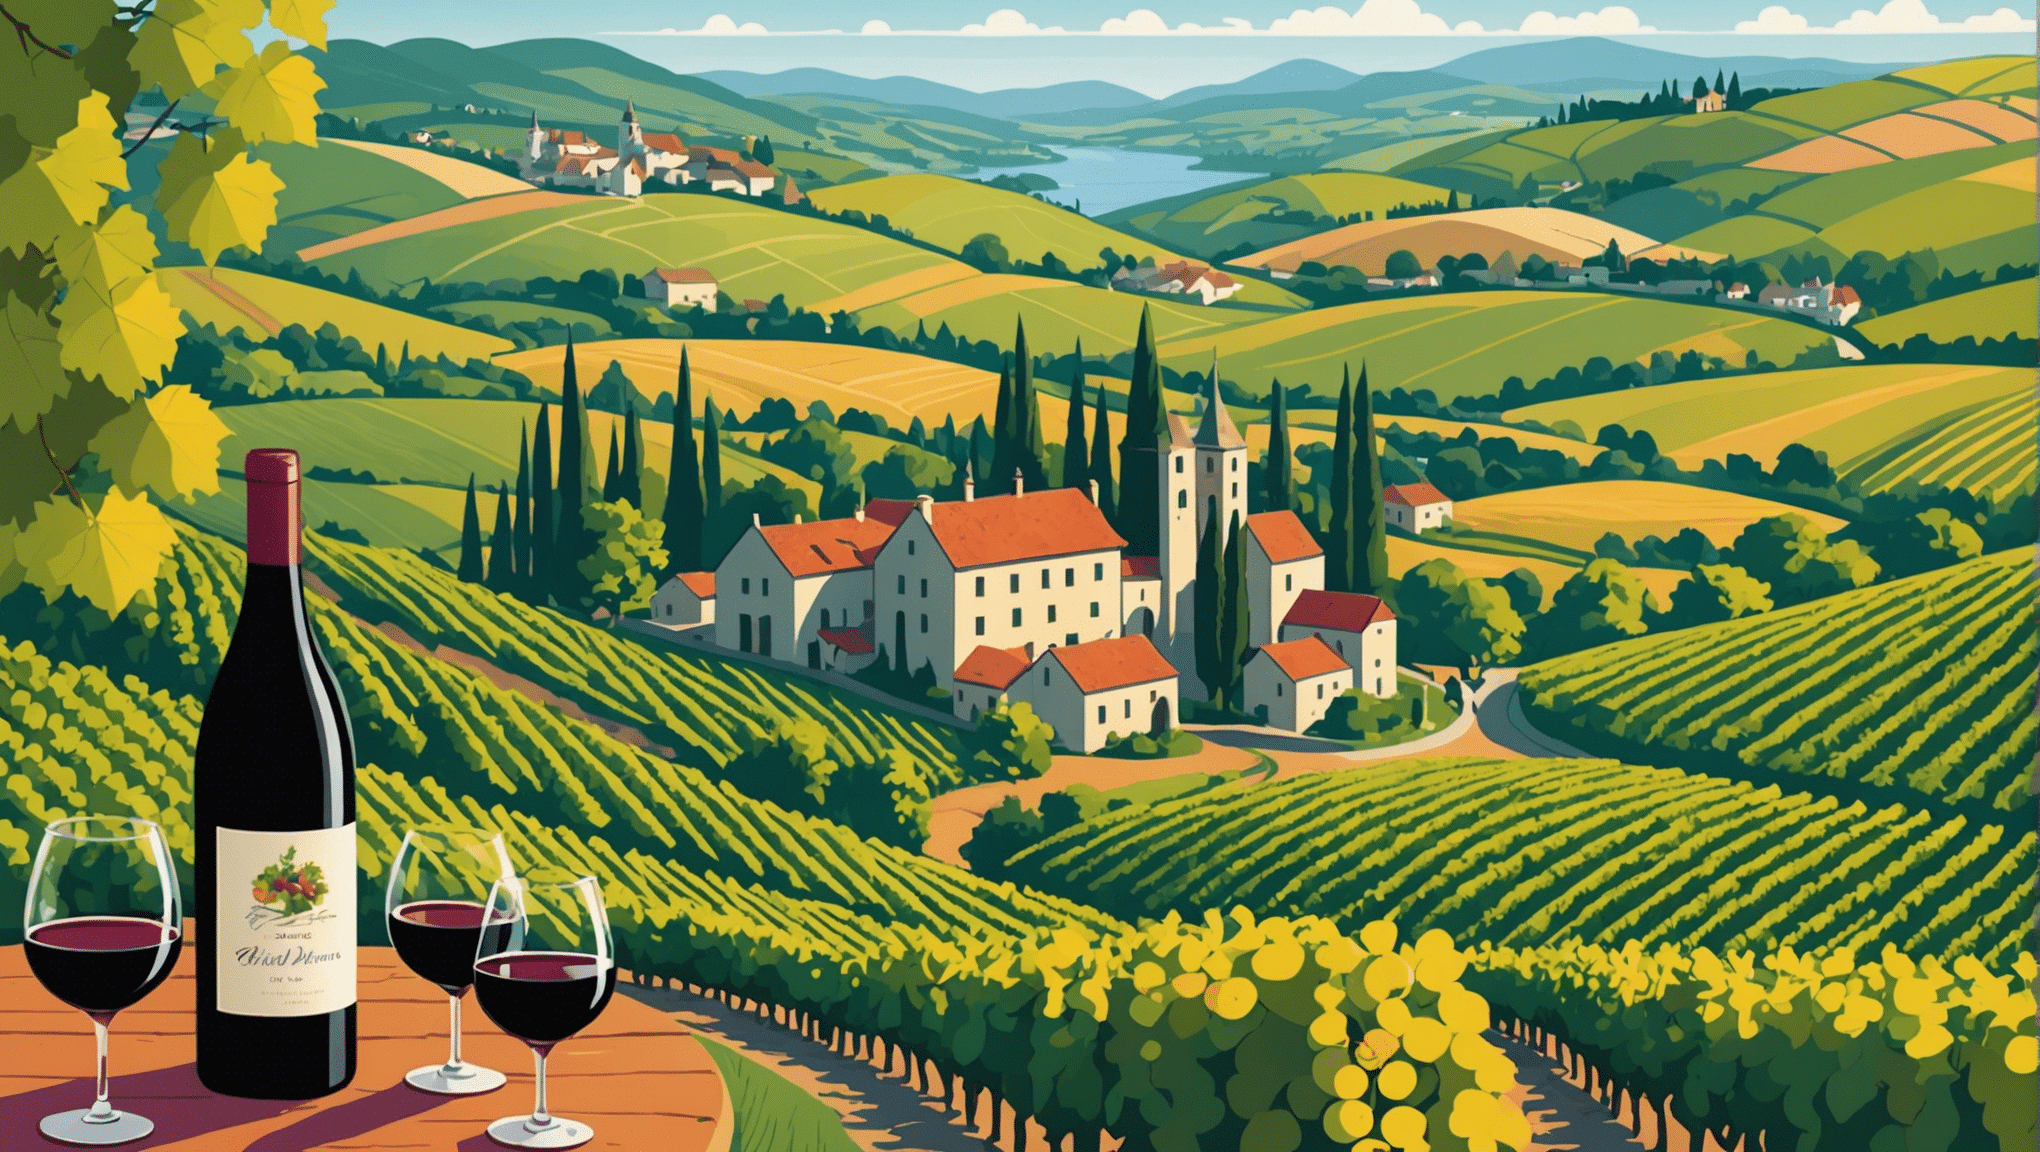 वाइन रूट के सबसे खूबसूरत मार्गों की खोज करें। अपनी वाइन यात्रा के दौरान मनमोहक परिदृश्यों और अविस्मरणीय स्वाद का आनंद लें।